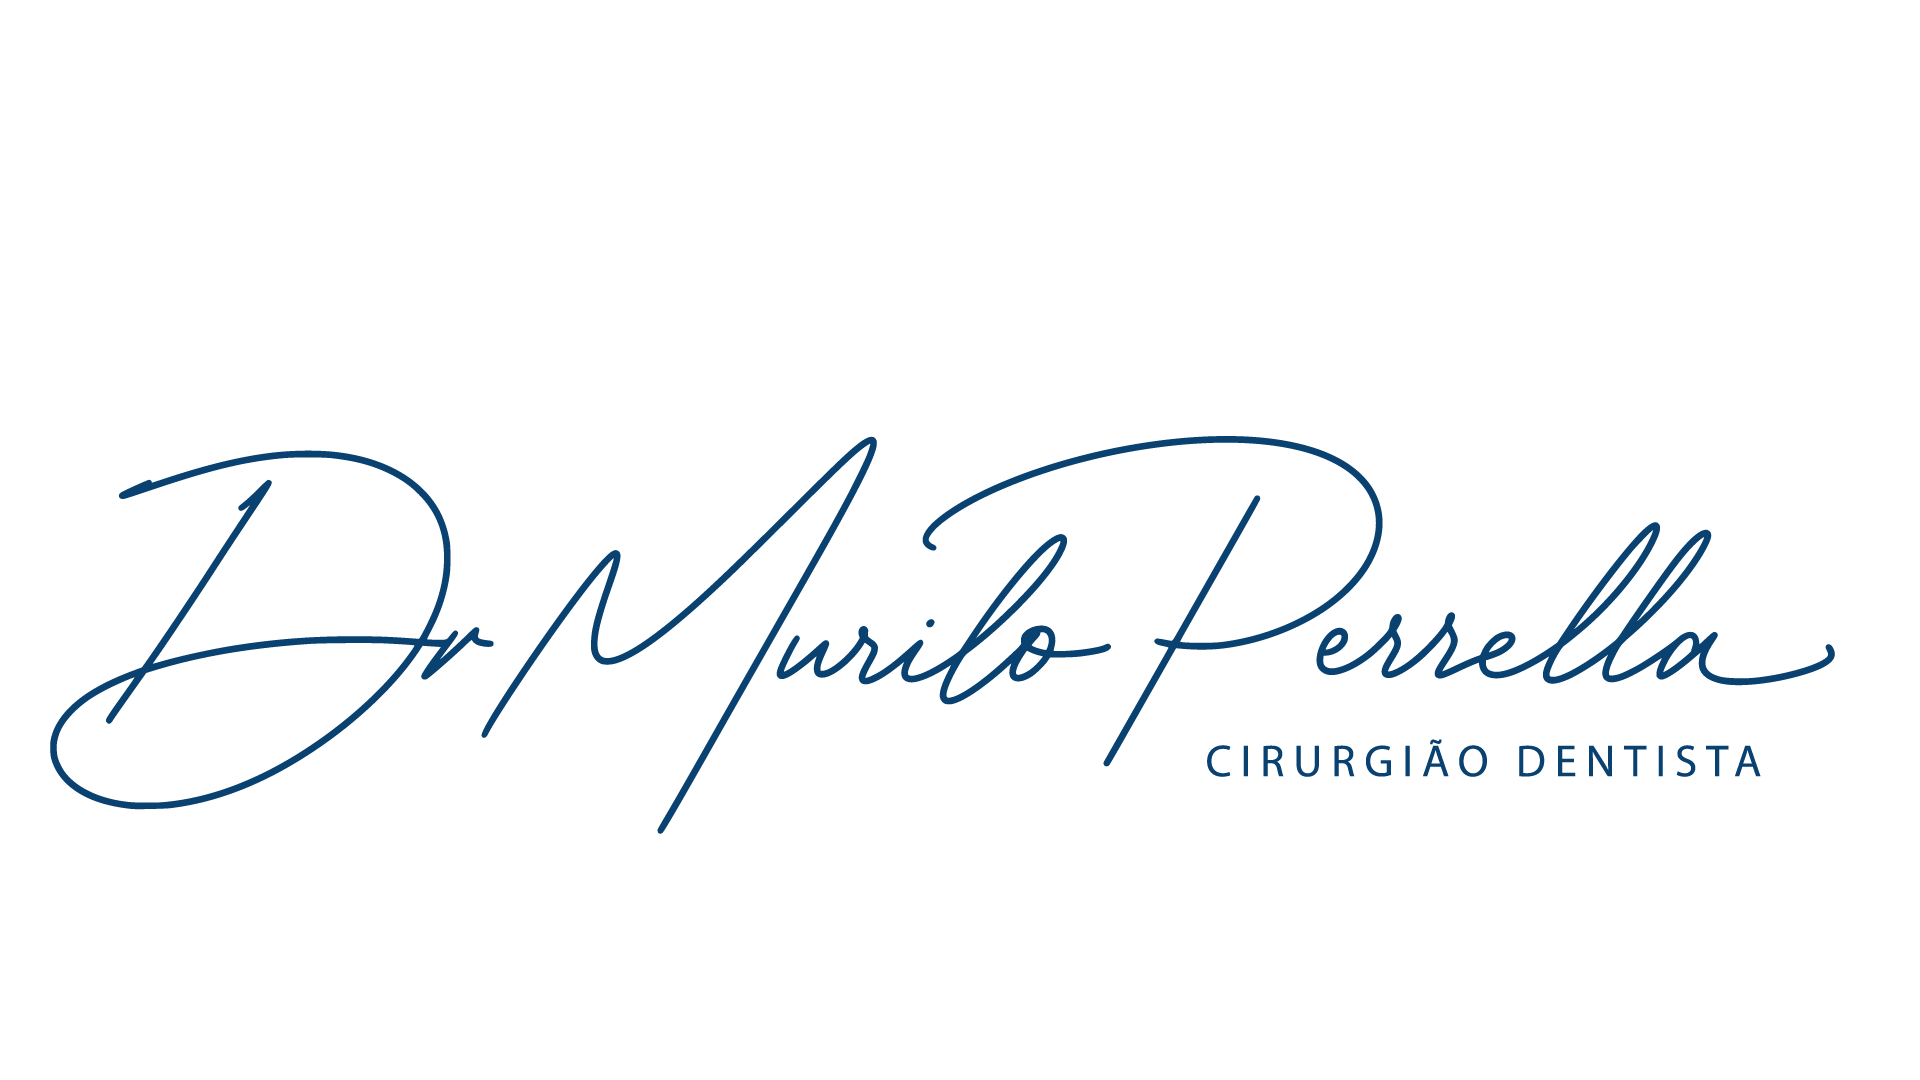 Dr. Murilo Perrella